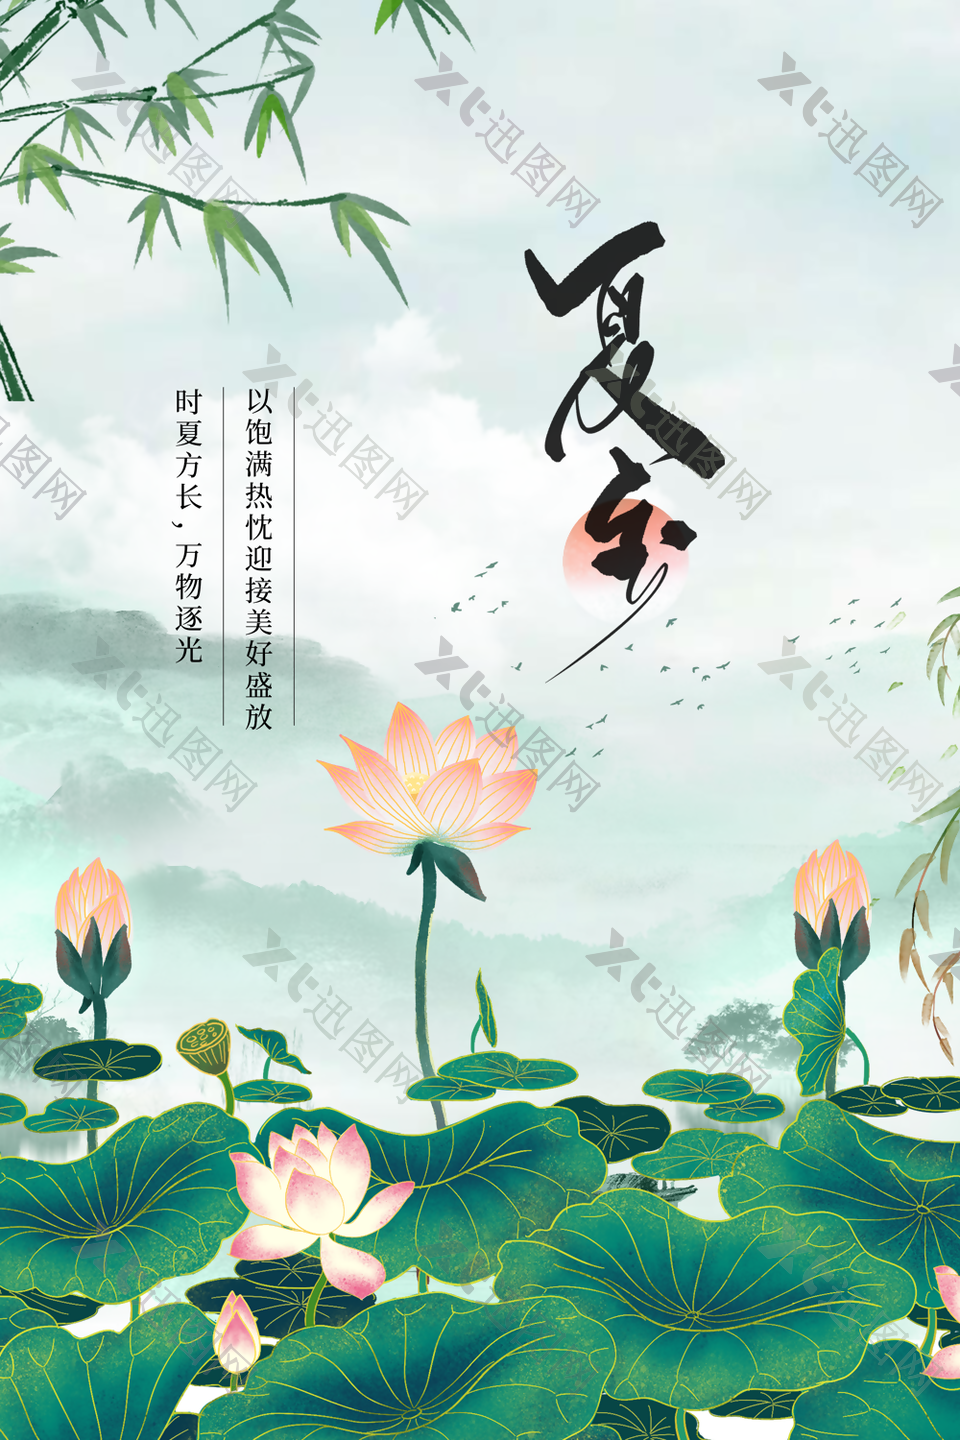 清新简约中国传统二十四节气夏至海报设计